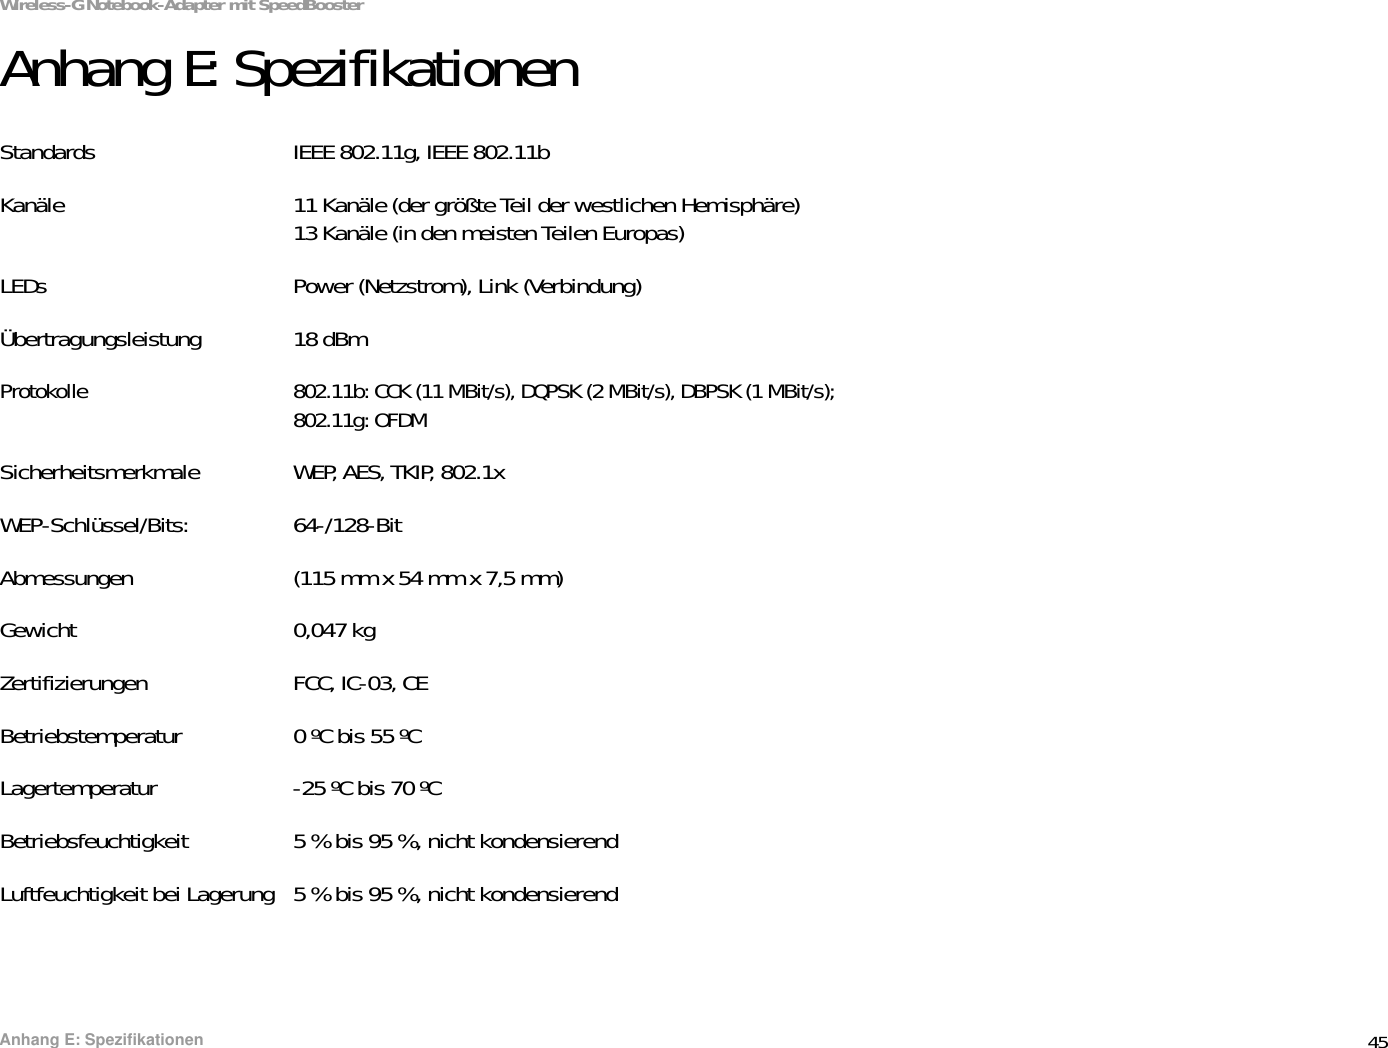 45Anhang E: SpezifikationenWireless-G Notebook-Adapter mit SpeedBoosterAnhang E: SpezifikationenStandards IEEE 802.11g, IEEE 802.11bKanäle 11 Kanäle (der größte Teil der westlichen Hemisphäre)13 Kanäle (in den meisten Teilen Europas)LEDs Power (Netzstrom), Link (Verbindung)Übertragungsleistung 18 dBm Protokolle 802.11b: CCK (11 MBit/s), DQPSK (2 MBit/s), DBPSK (1 MBit/s); 802.11g: OFDMSicherheitsmerkmale WEP, AES, TKIP, 802.1xWEP-Schlüssel/Bits: 64-/128-BitAbmessungen (115 mm x 54 mm x 7,5 mm)Gewicht 0,047 kgZertifizierungen FCC, IC-03, CEBetriebstemperatur 0 ºC bis 55 ºCLagertemperatur -25 ºC bis 70 ºCBetriebsfeuchtigkeit 5 % bis 95 %, nicht kondensierendLuftfeuchtigkeit bei Lagerung 5 % bis 95 %, nicht kondensierend